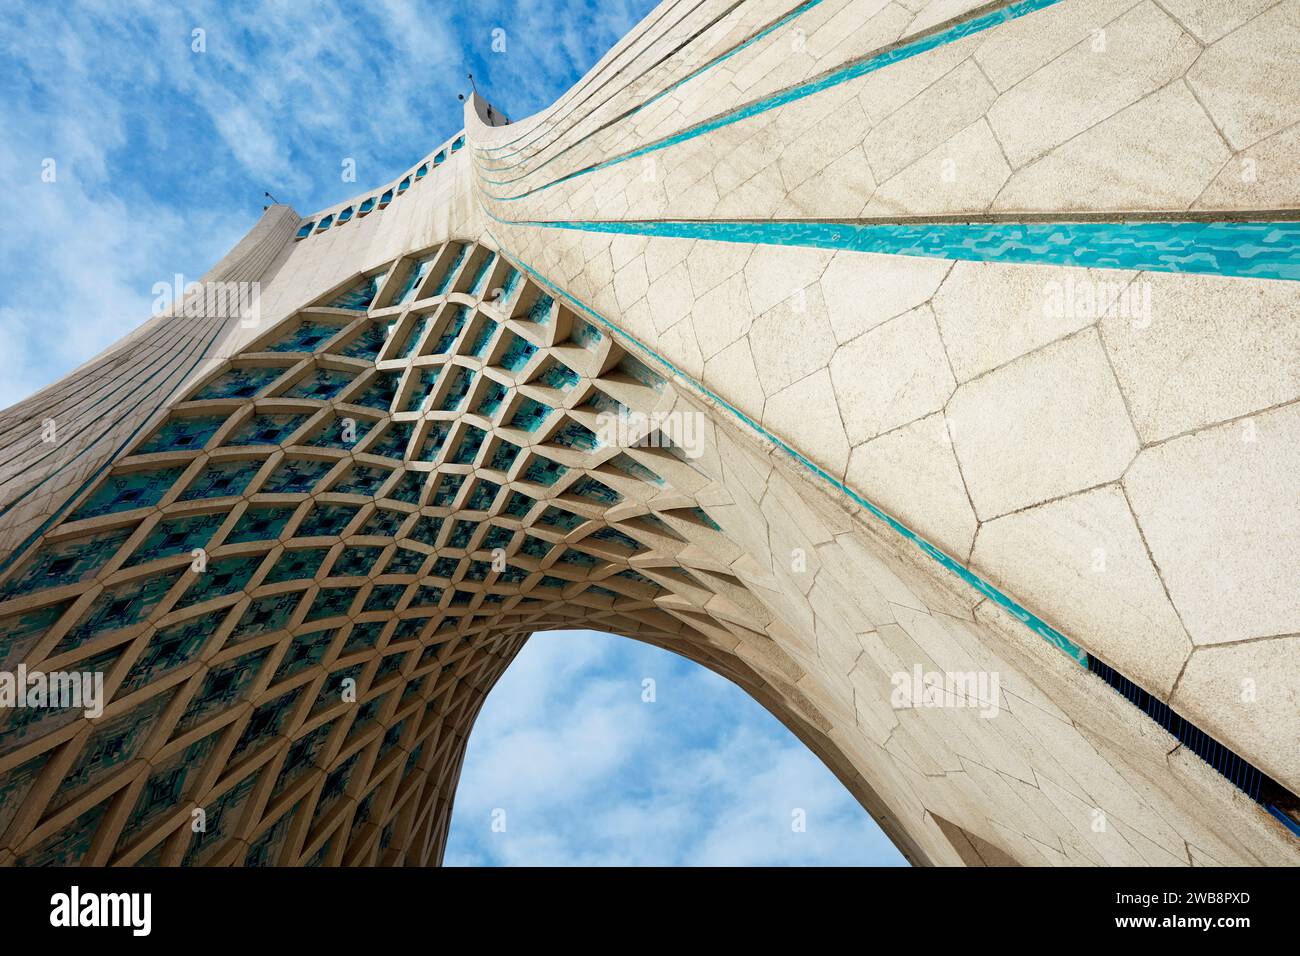 Une vue à faible angle de la Tour Azadi (Tour de la liberté), un monument emblématique de Téhéran, en Iran. Banque D'Images